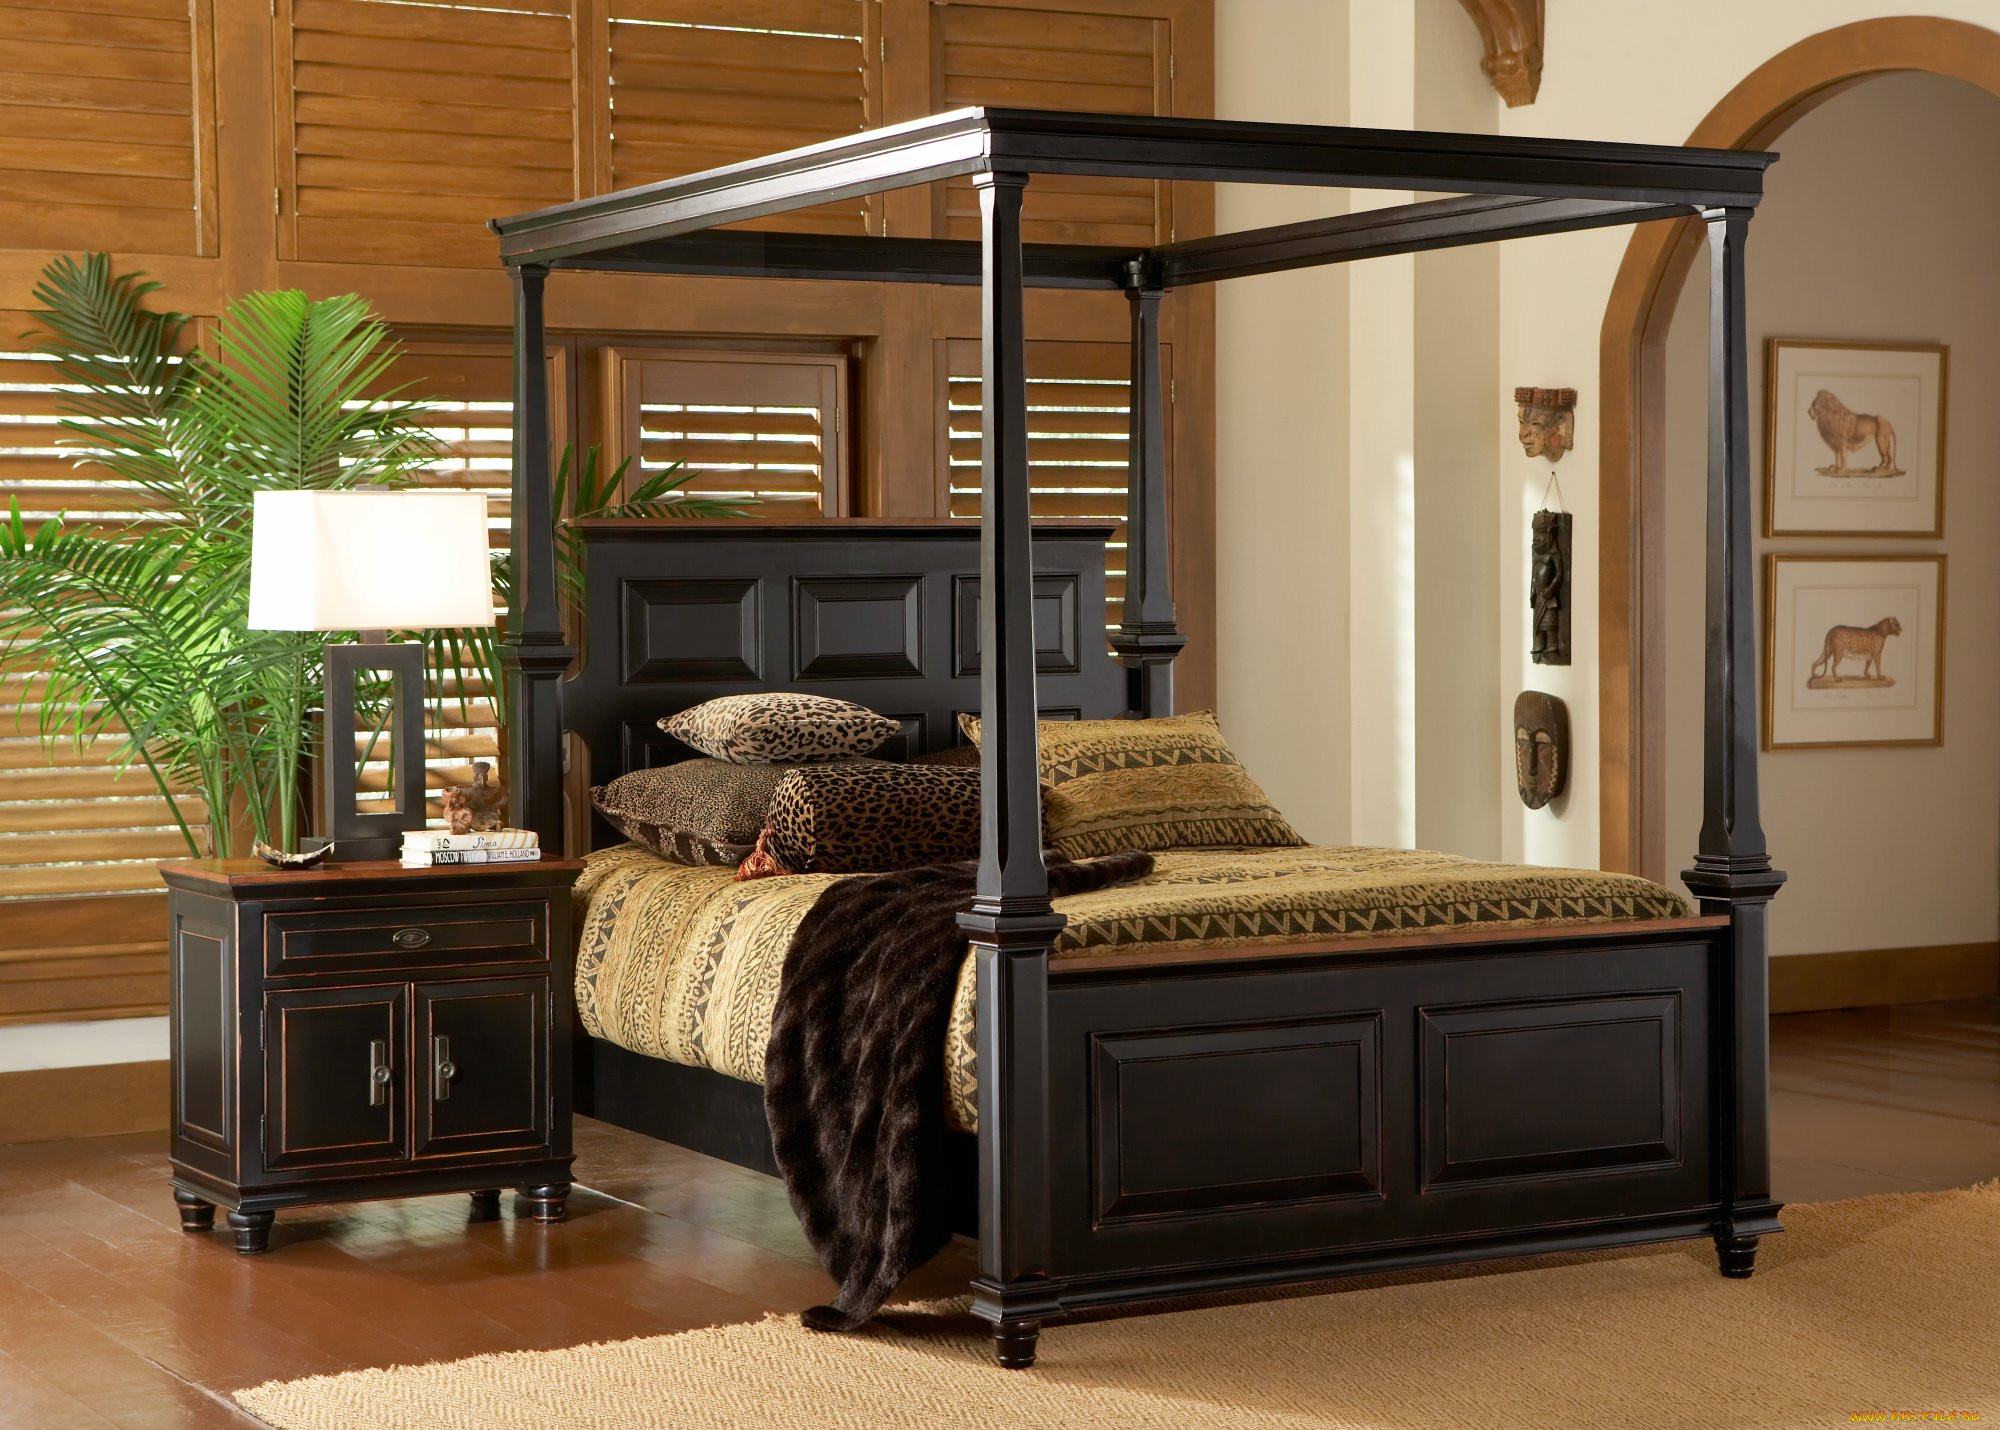 Bed stand. Кровати разных эпох. Двух спальная кровать "ларгос". Кровать Лори Ларго мебель. Кровать черная с оранжевым.